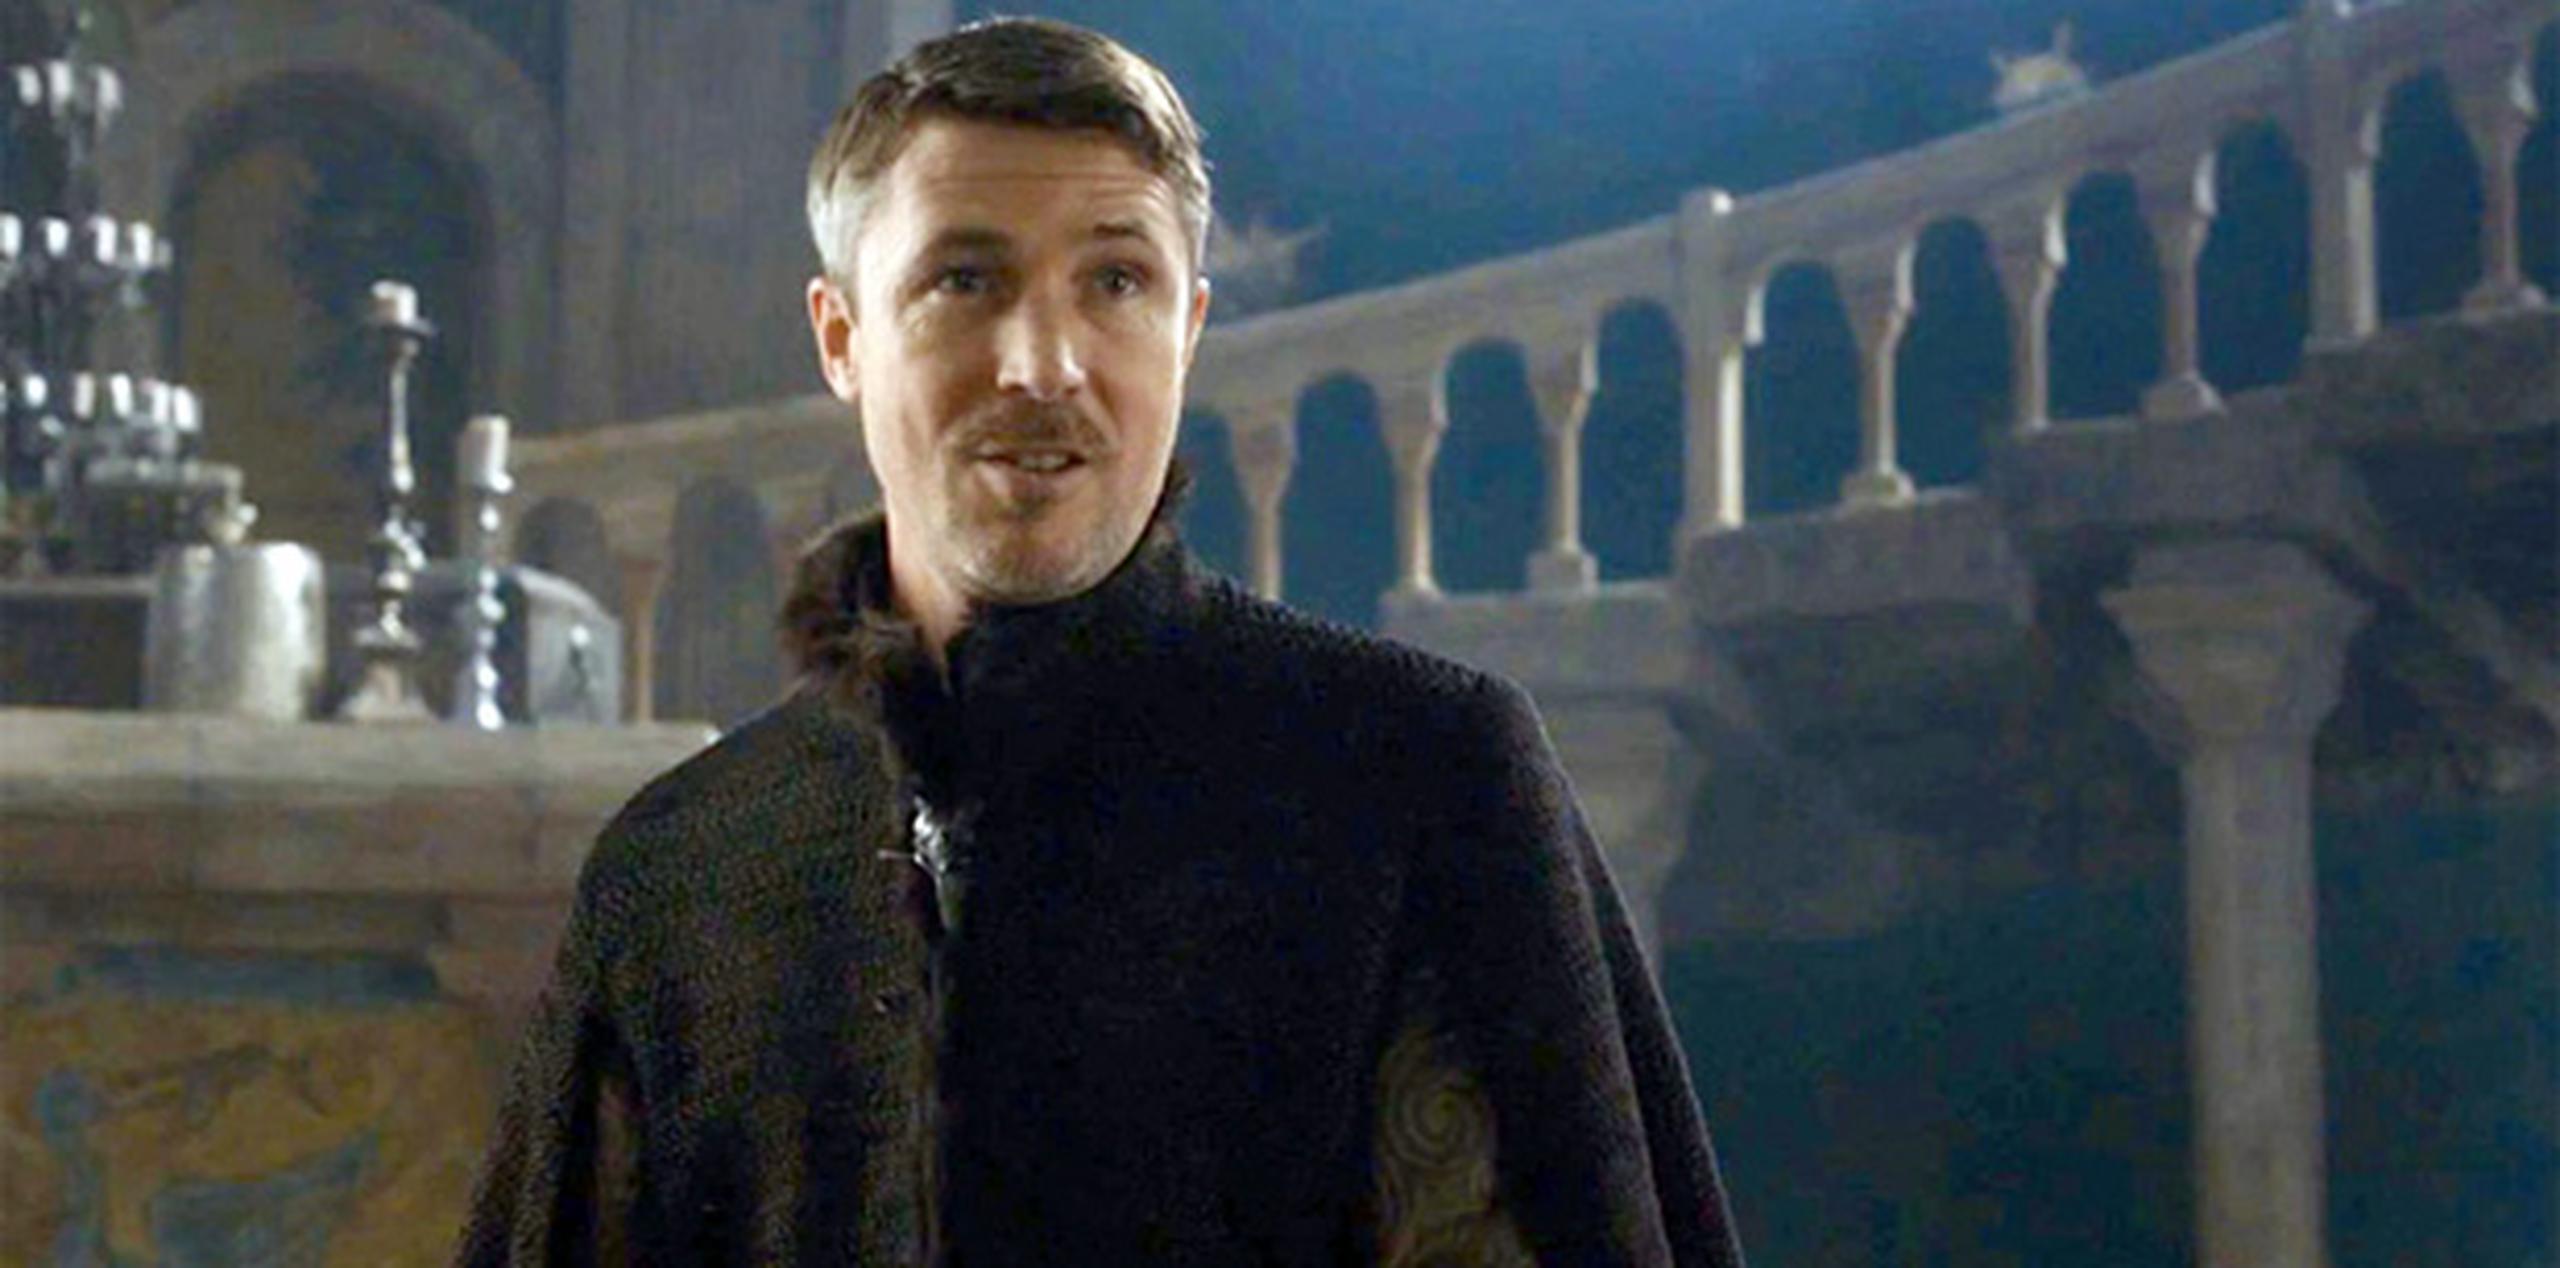 El actor Aidan Gillen interpreta a "Petyr Baelish" -mejor conocido como "Littlefinger"- en la serie "Game of Thrones".